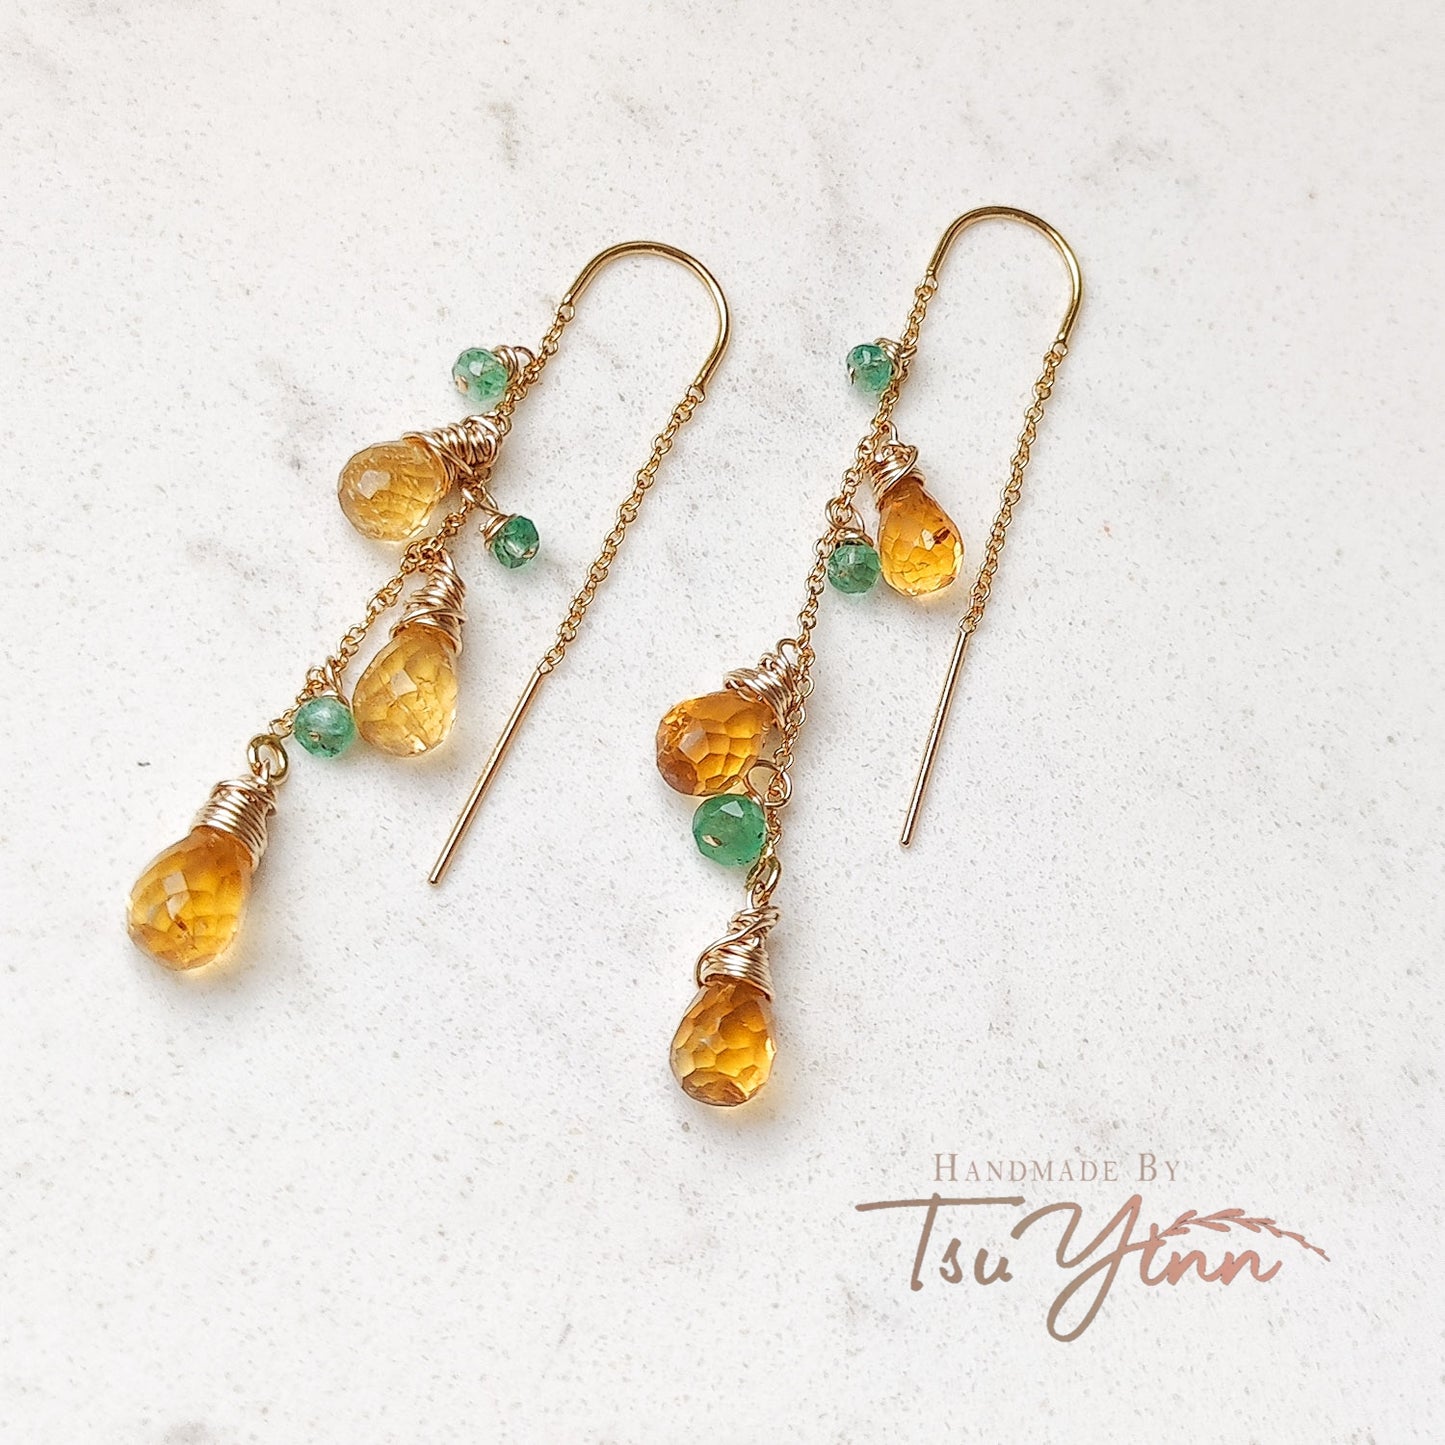 The Citrus Earrings